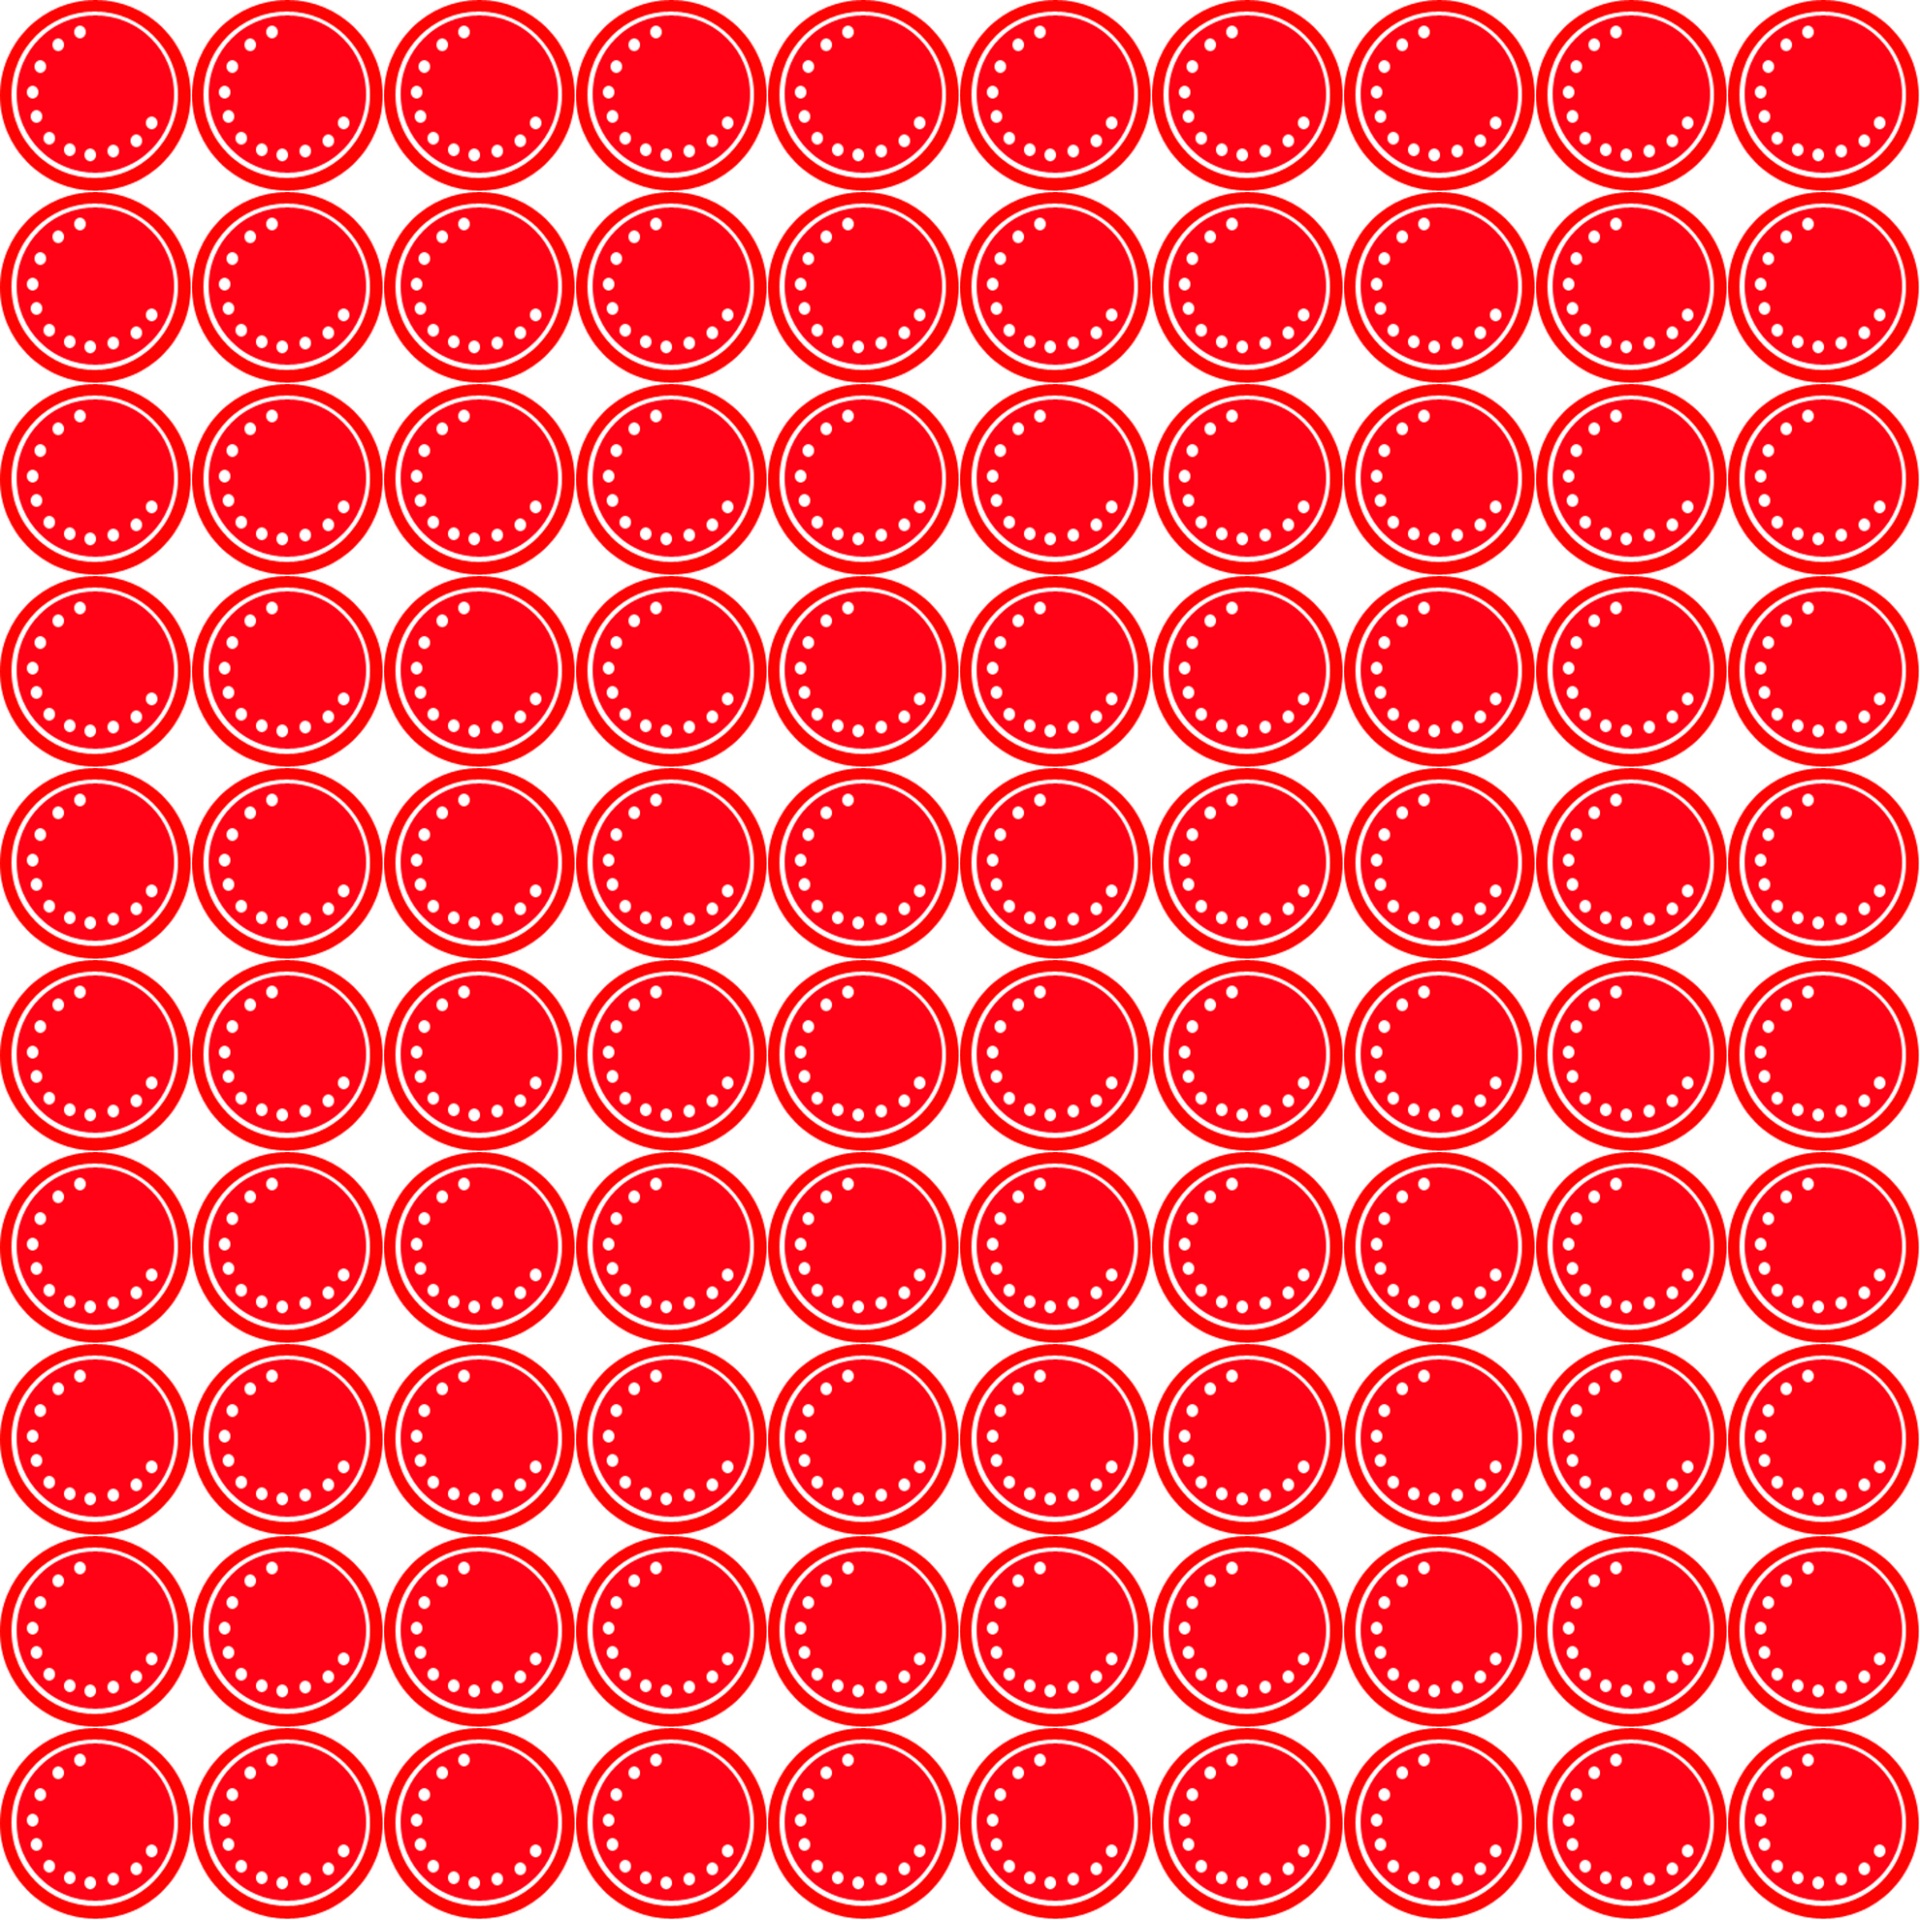 Кружочки без звука. Кружочки для счета. Красные круги раздаточный материал. Красные кружки раздаточный материал. Круги красного цвета раздаточный материал.